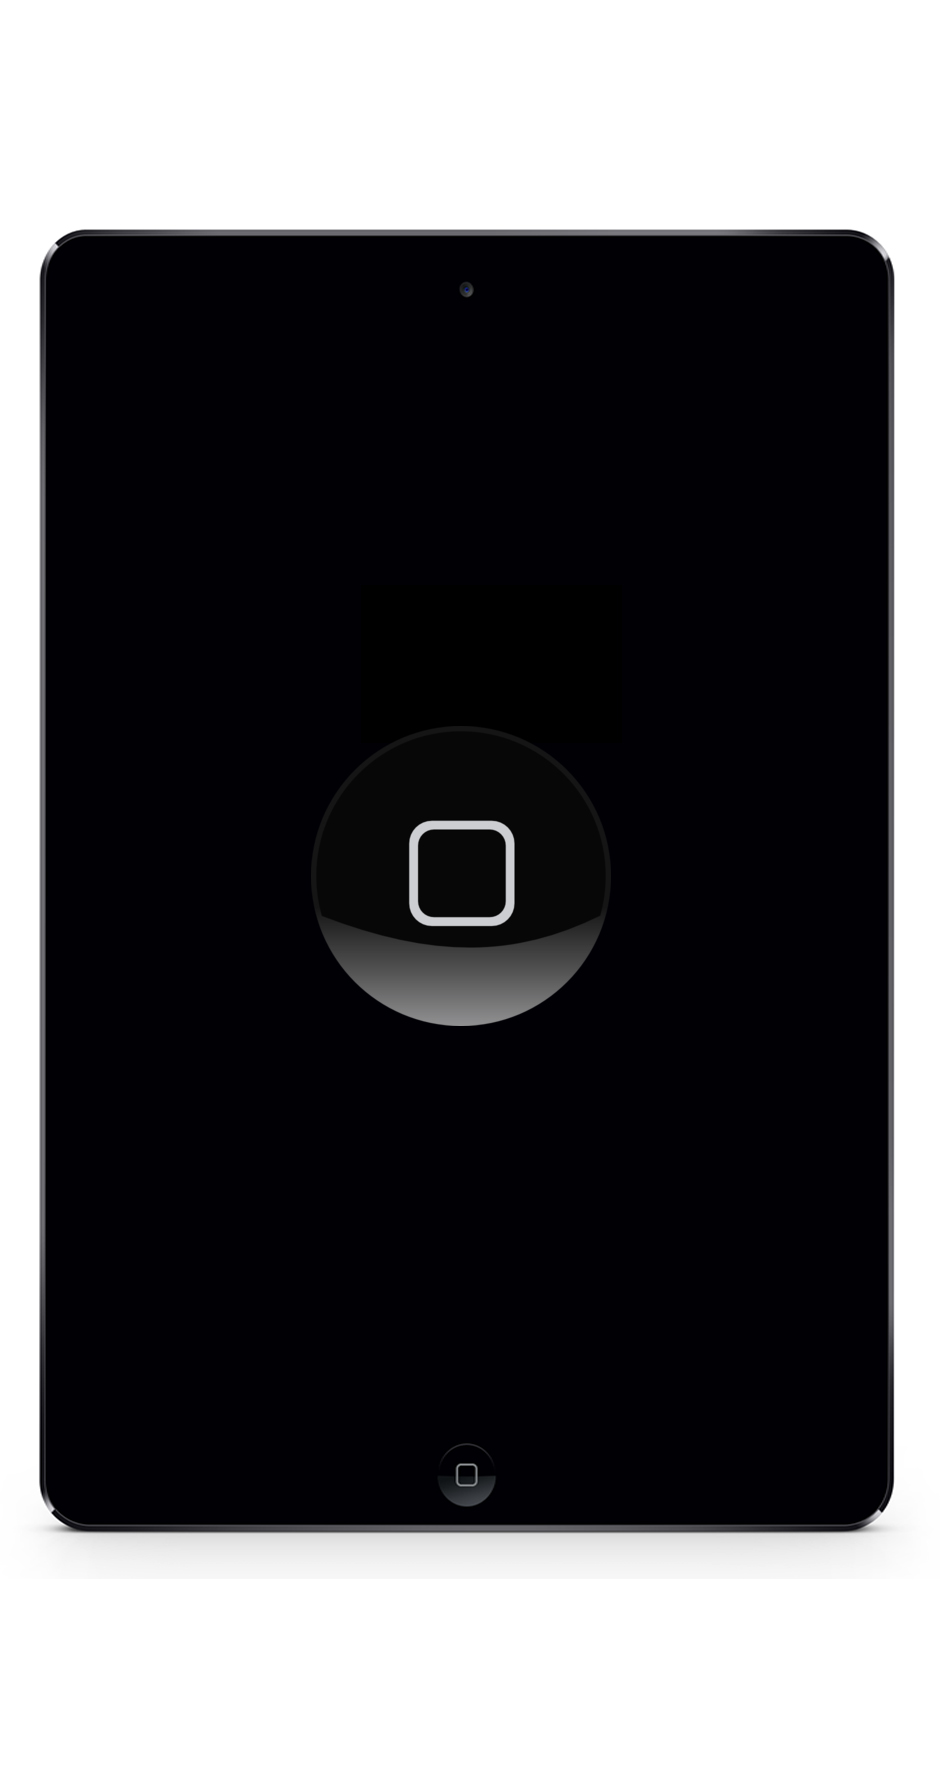 iPad Mini 4 Reparatur Berlin Home-button